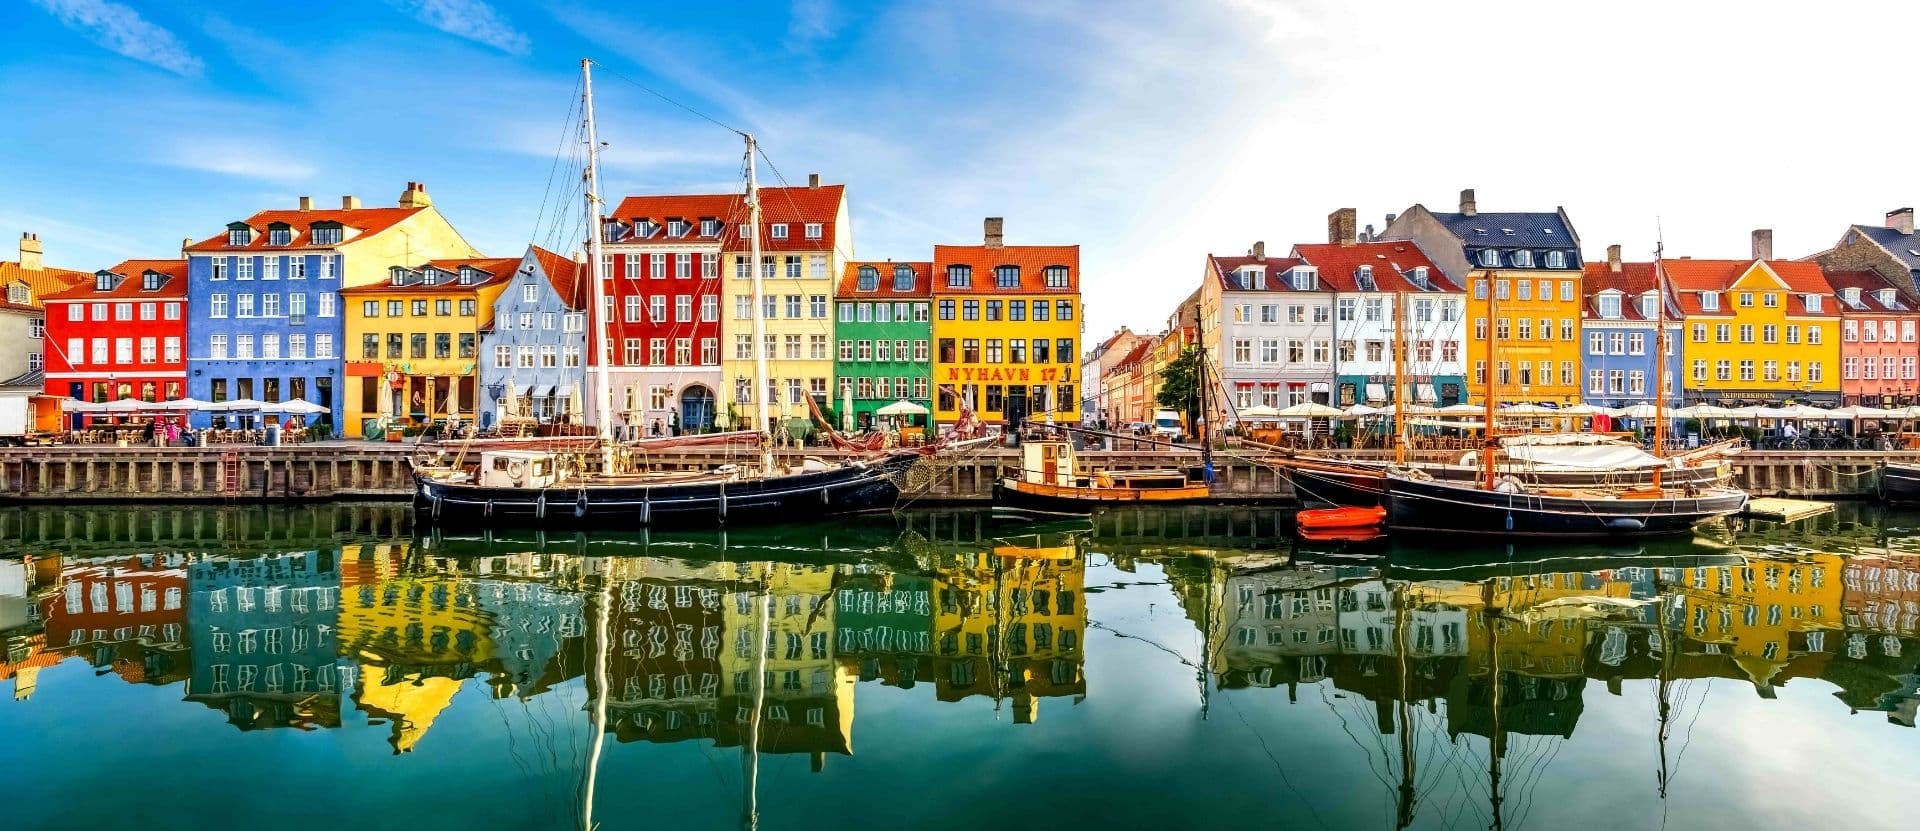 Colourful houses on river in Copenhagen, Denmark